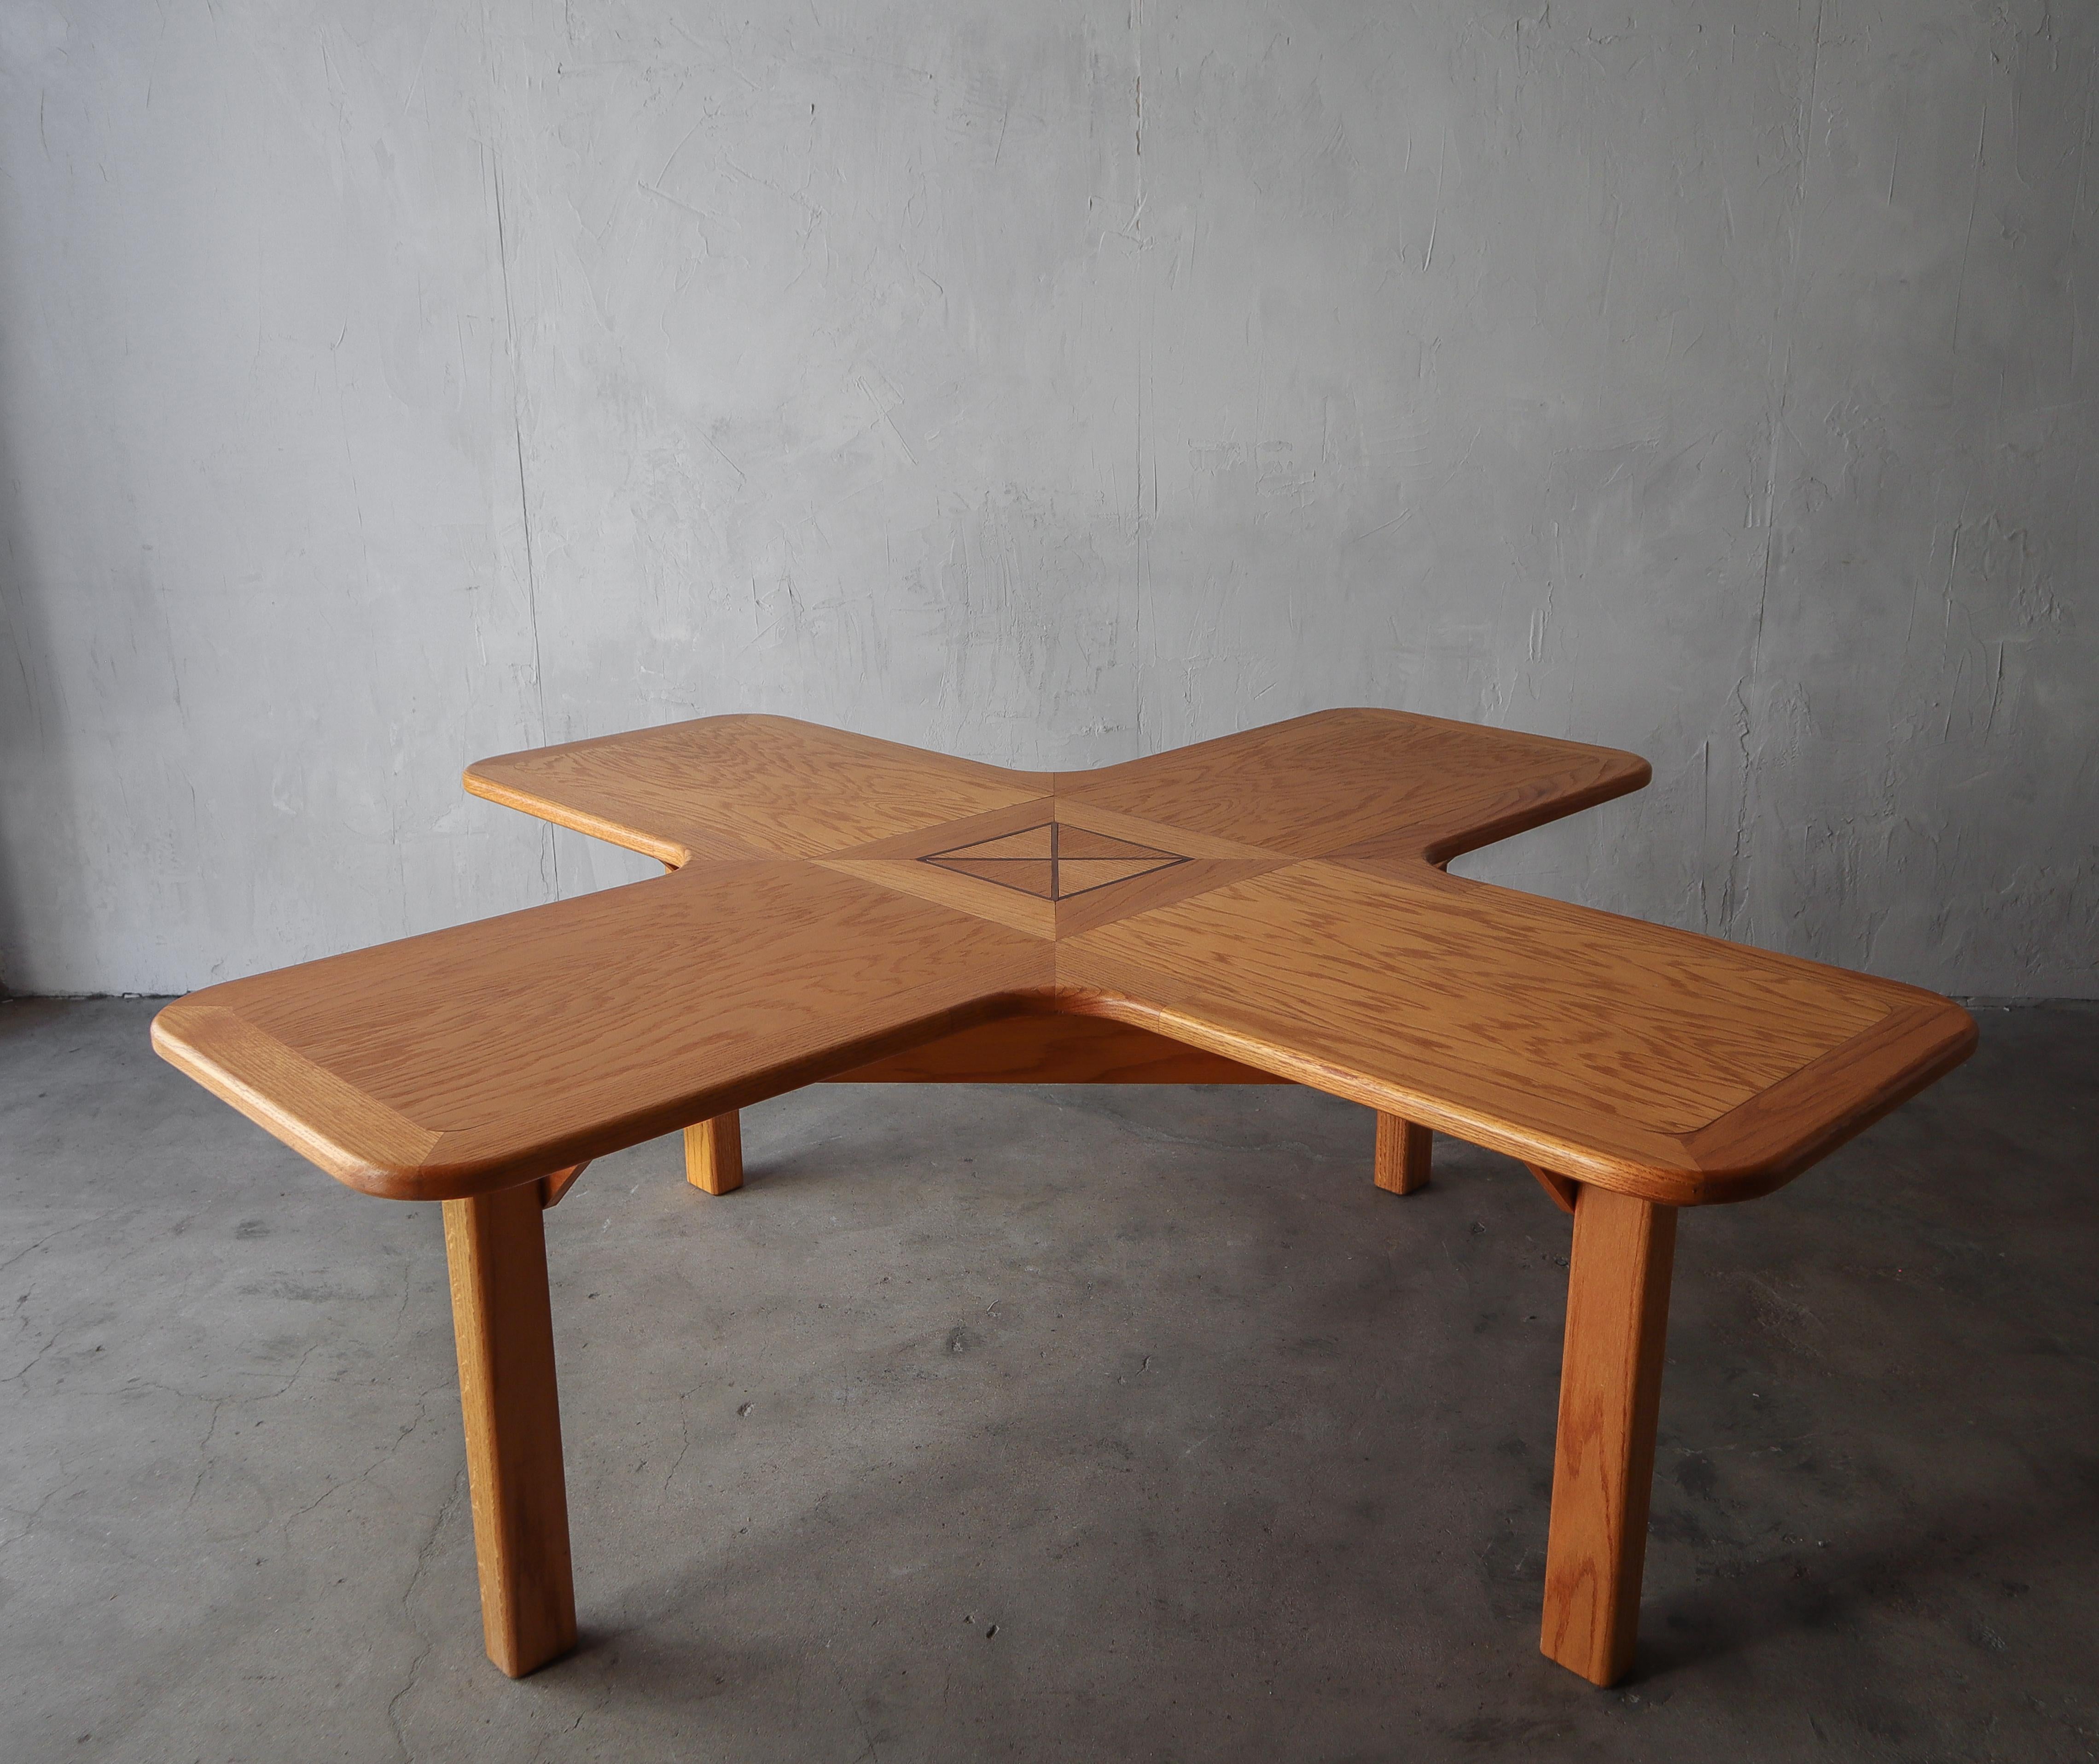 Ein einzigartiger Tisch, der auf vielfältige Weise genutzt werden kann. Gefertigt aus massiver Eiche in Form eines X oder eines Pluszeichens, je nachdem, wie man es betrachtet, mit einem einzigartigen Intarsienmuster in der Mitte. Dieser Tisch